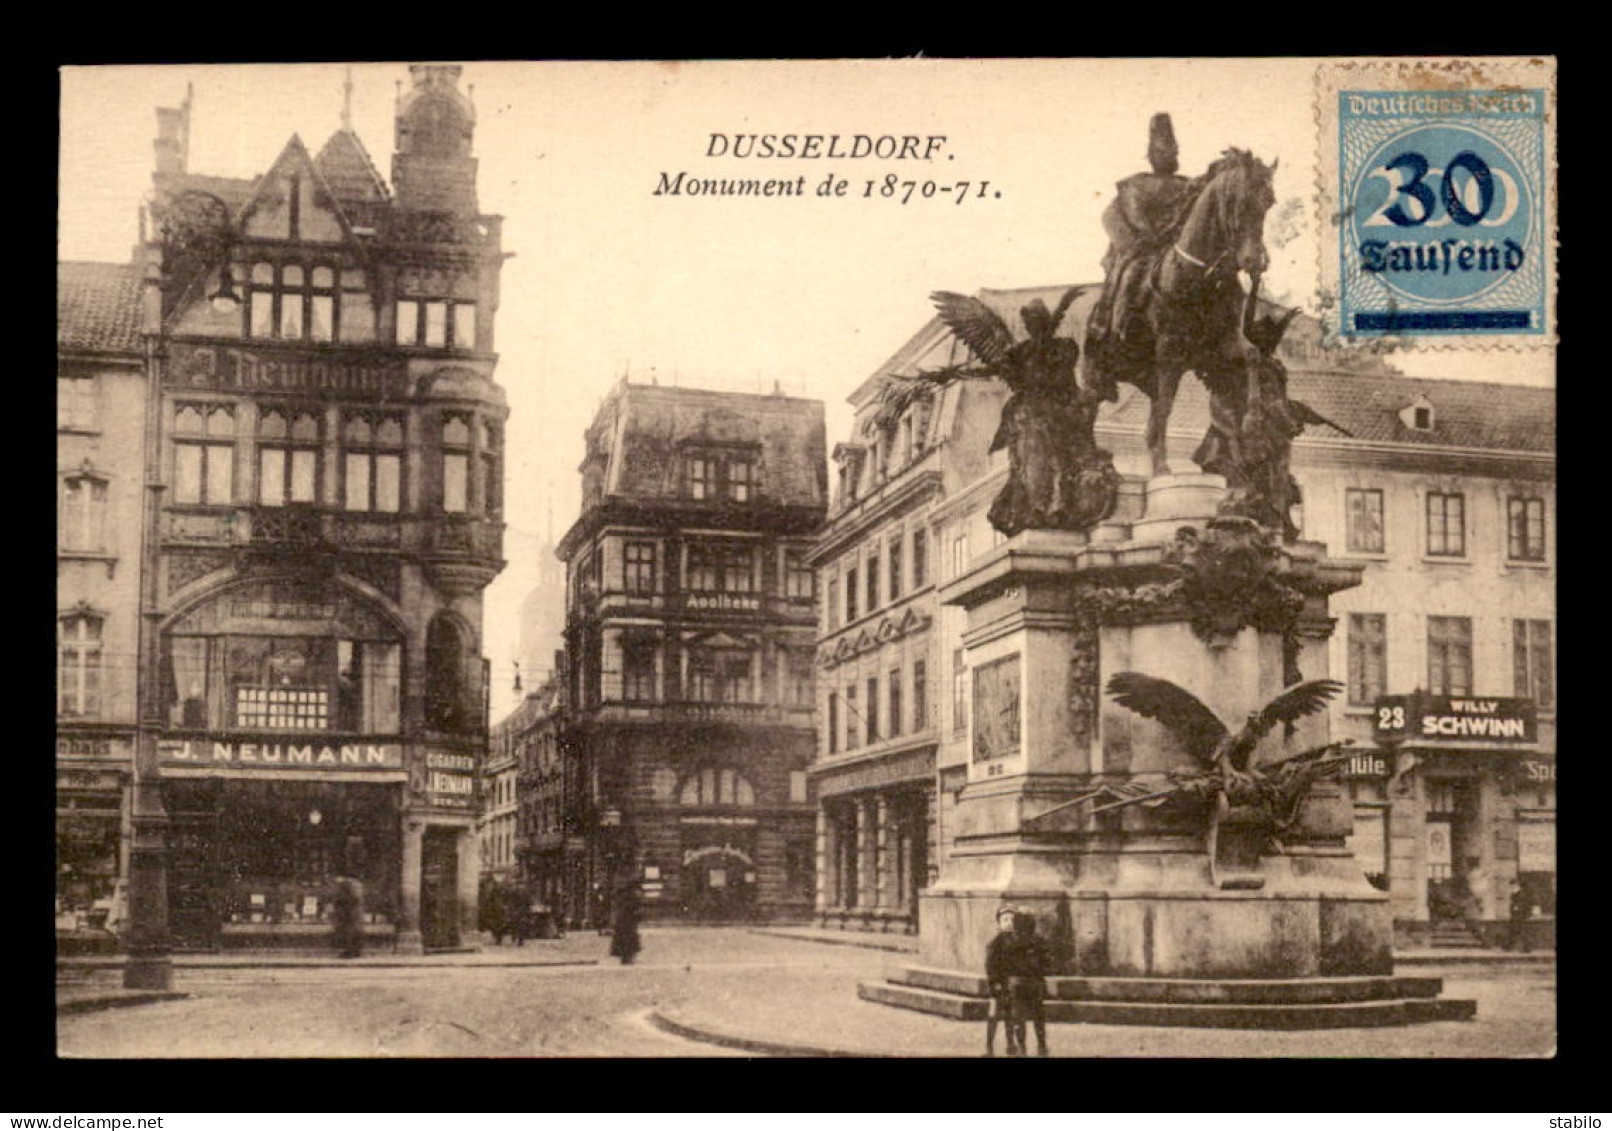 ALLEMAGNE - DUSSELDORF - MONUMENT GUERRE DE 1870 - MAGASINS J. NEUMANN - WILLY SCHWINN - Duesseldorf